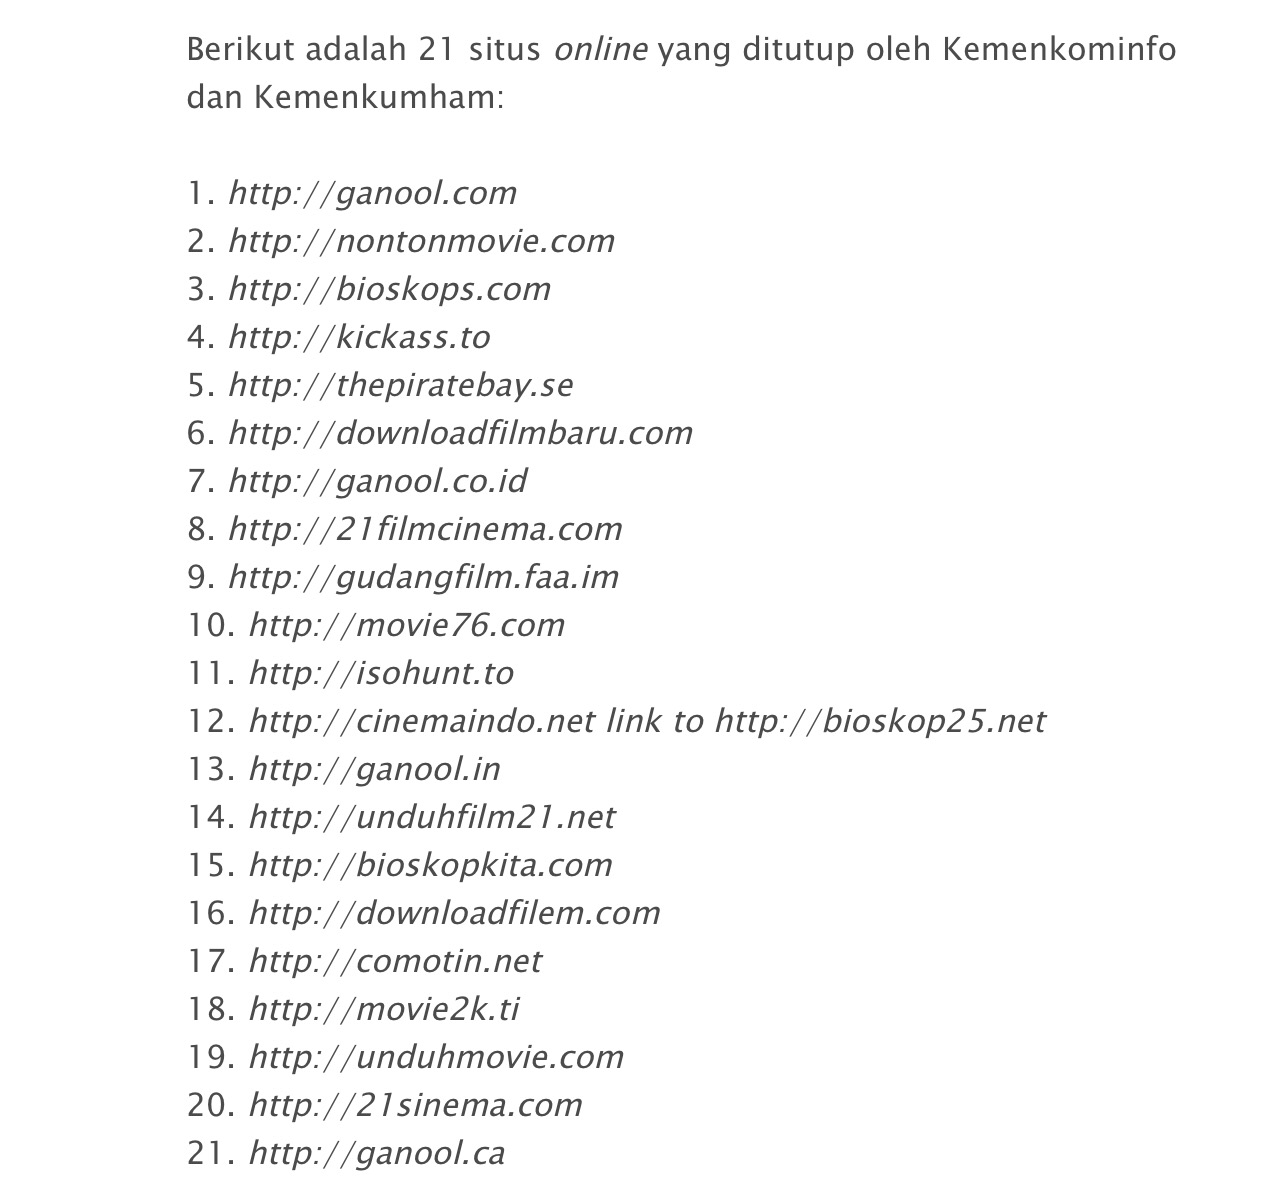 Web Bokep Indo